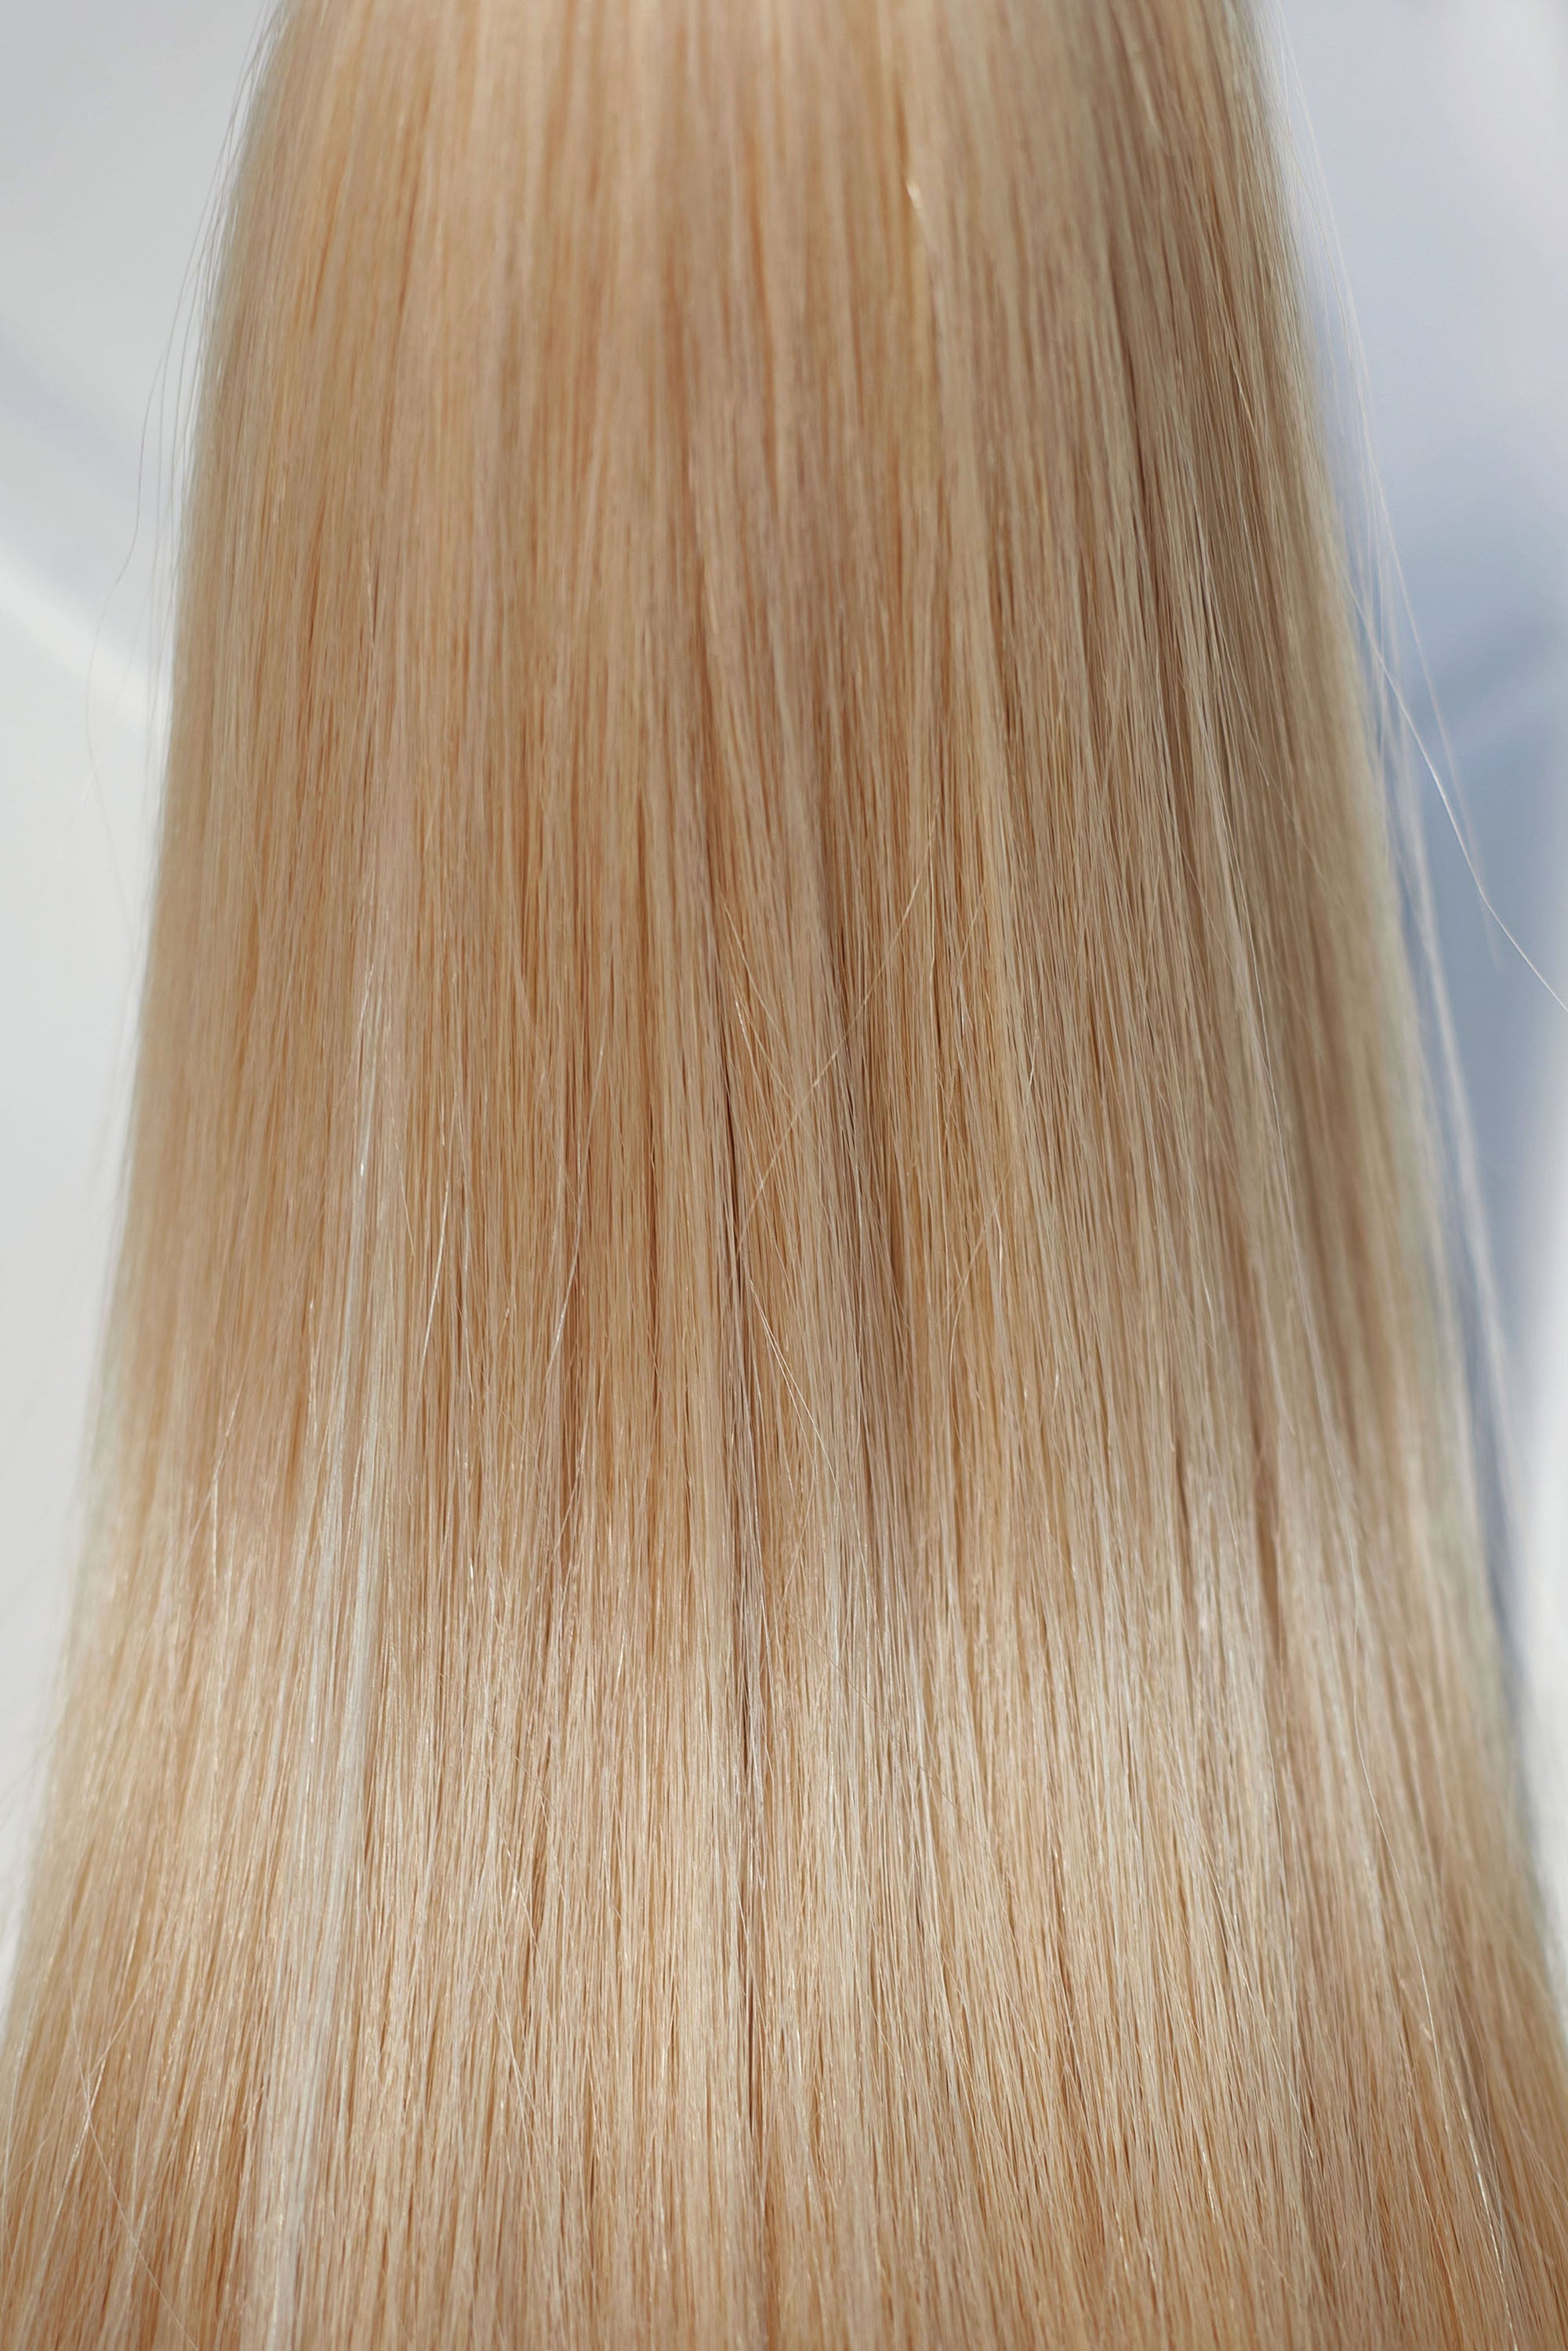 Behair professional Keratin Tip "Premium" 28" (70cm) Natural Straight Light Gold Blond #24 - 25g (Standart - 0.7g each pcs) hair extensions